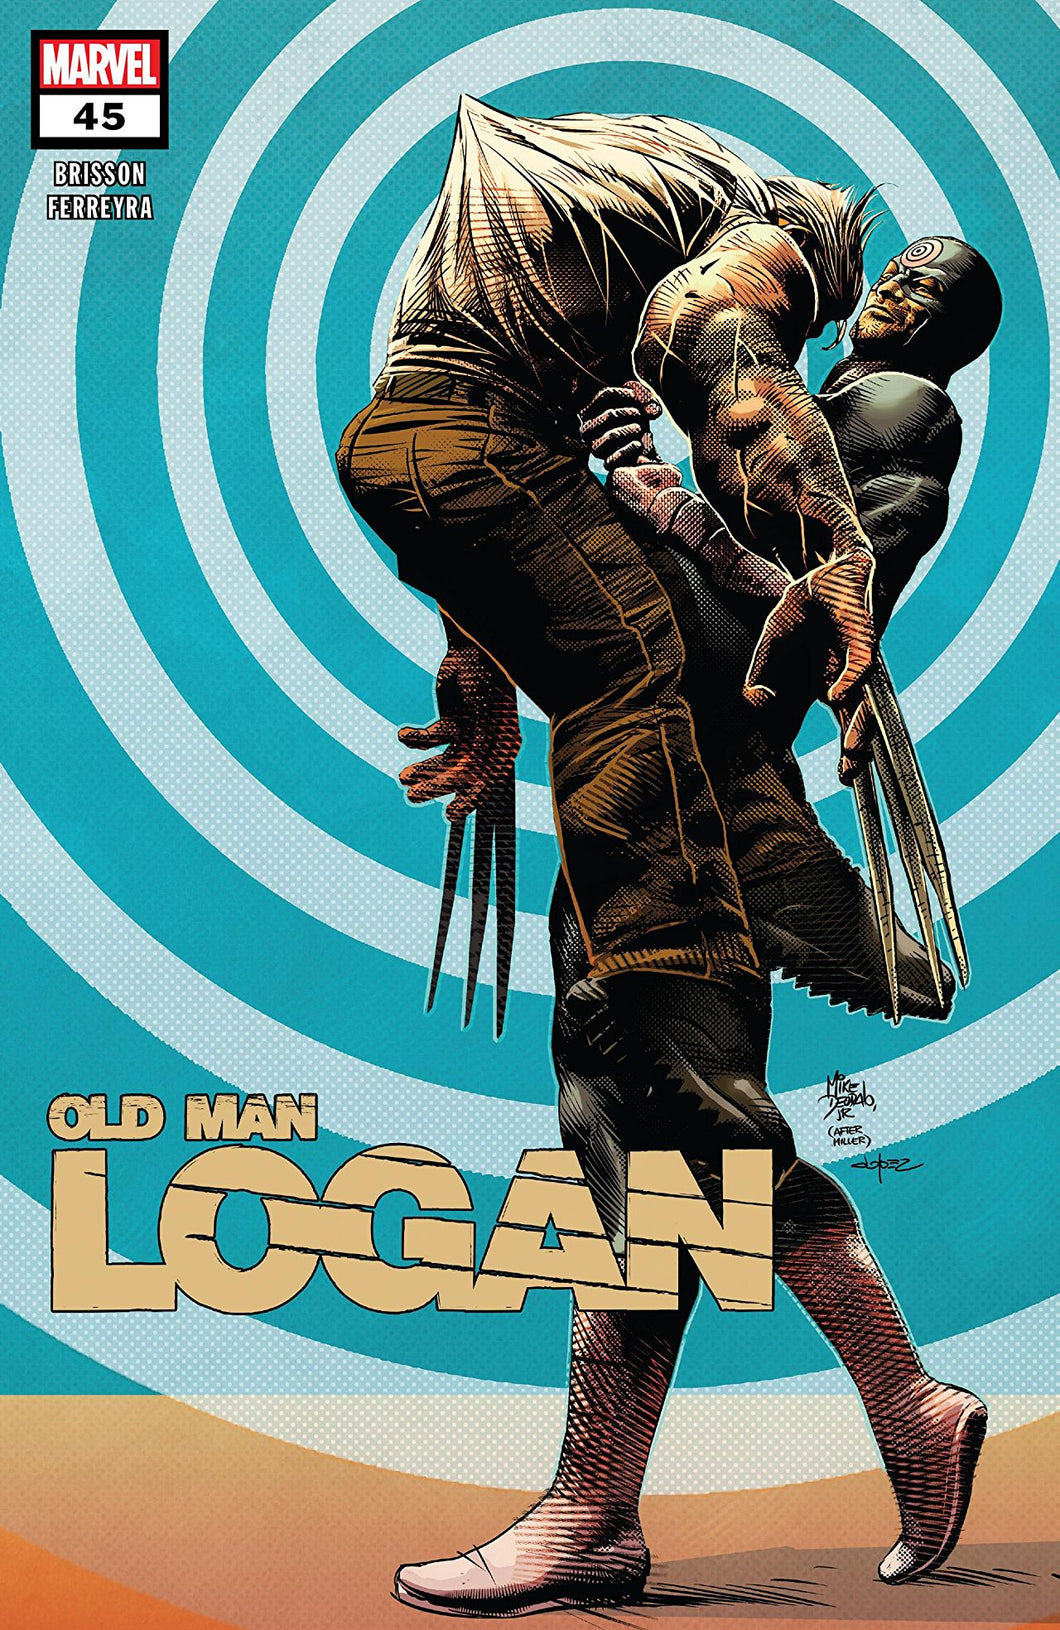 OLD MAN LOGAN #45 (08/08/2018)